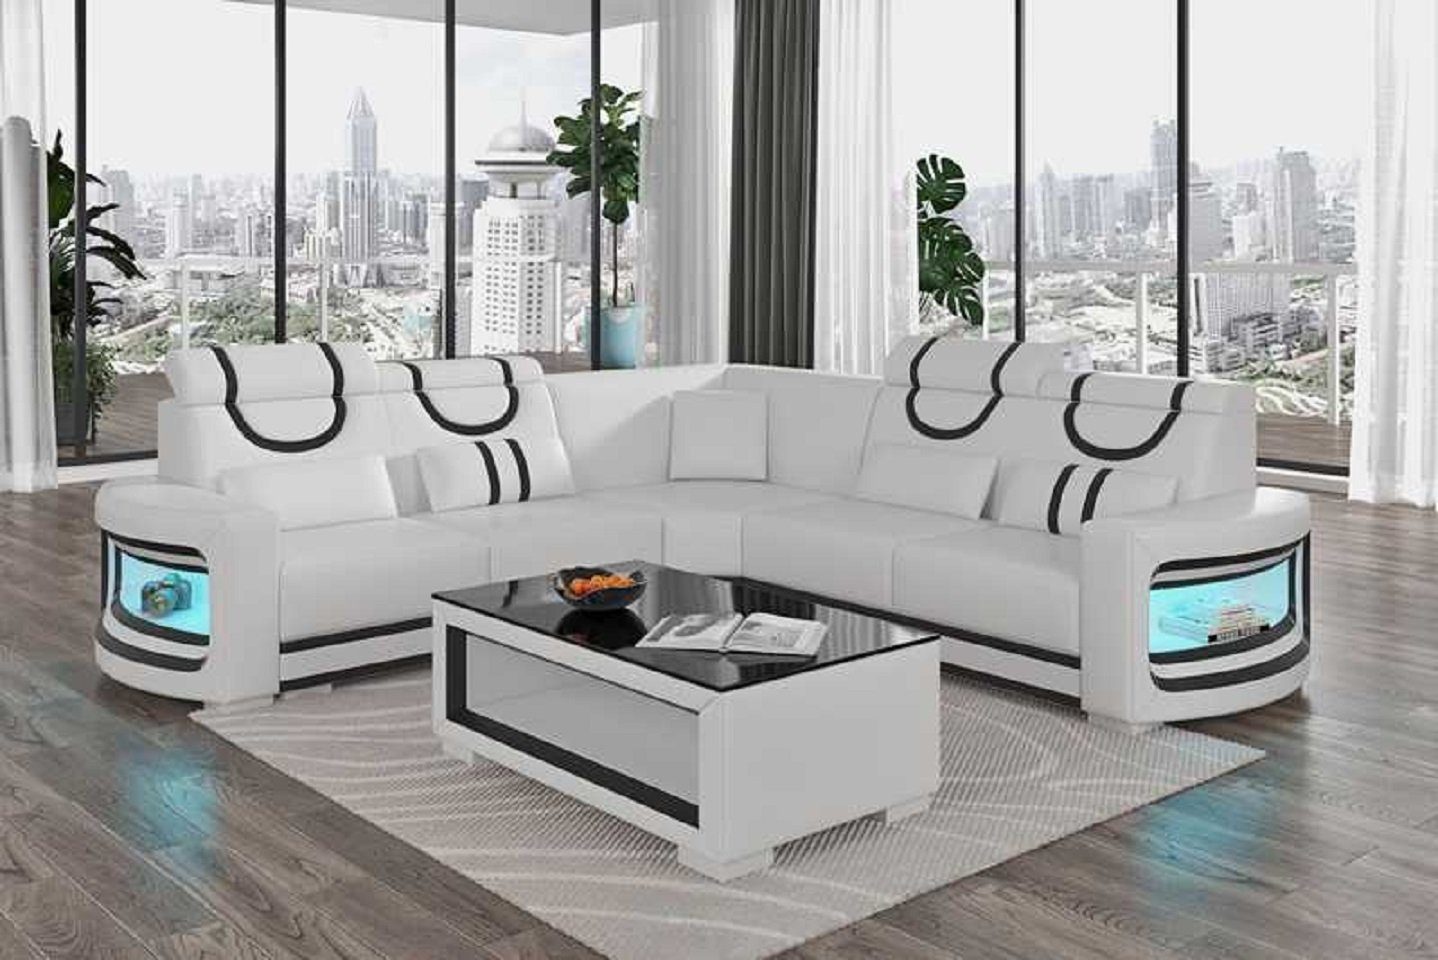 Europe Ecksofa Teile, Weiß in Wohnzimmer Ecksofa Couch Sofa Design JVmoebel Neu, Modern L Made Form Luxus 3